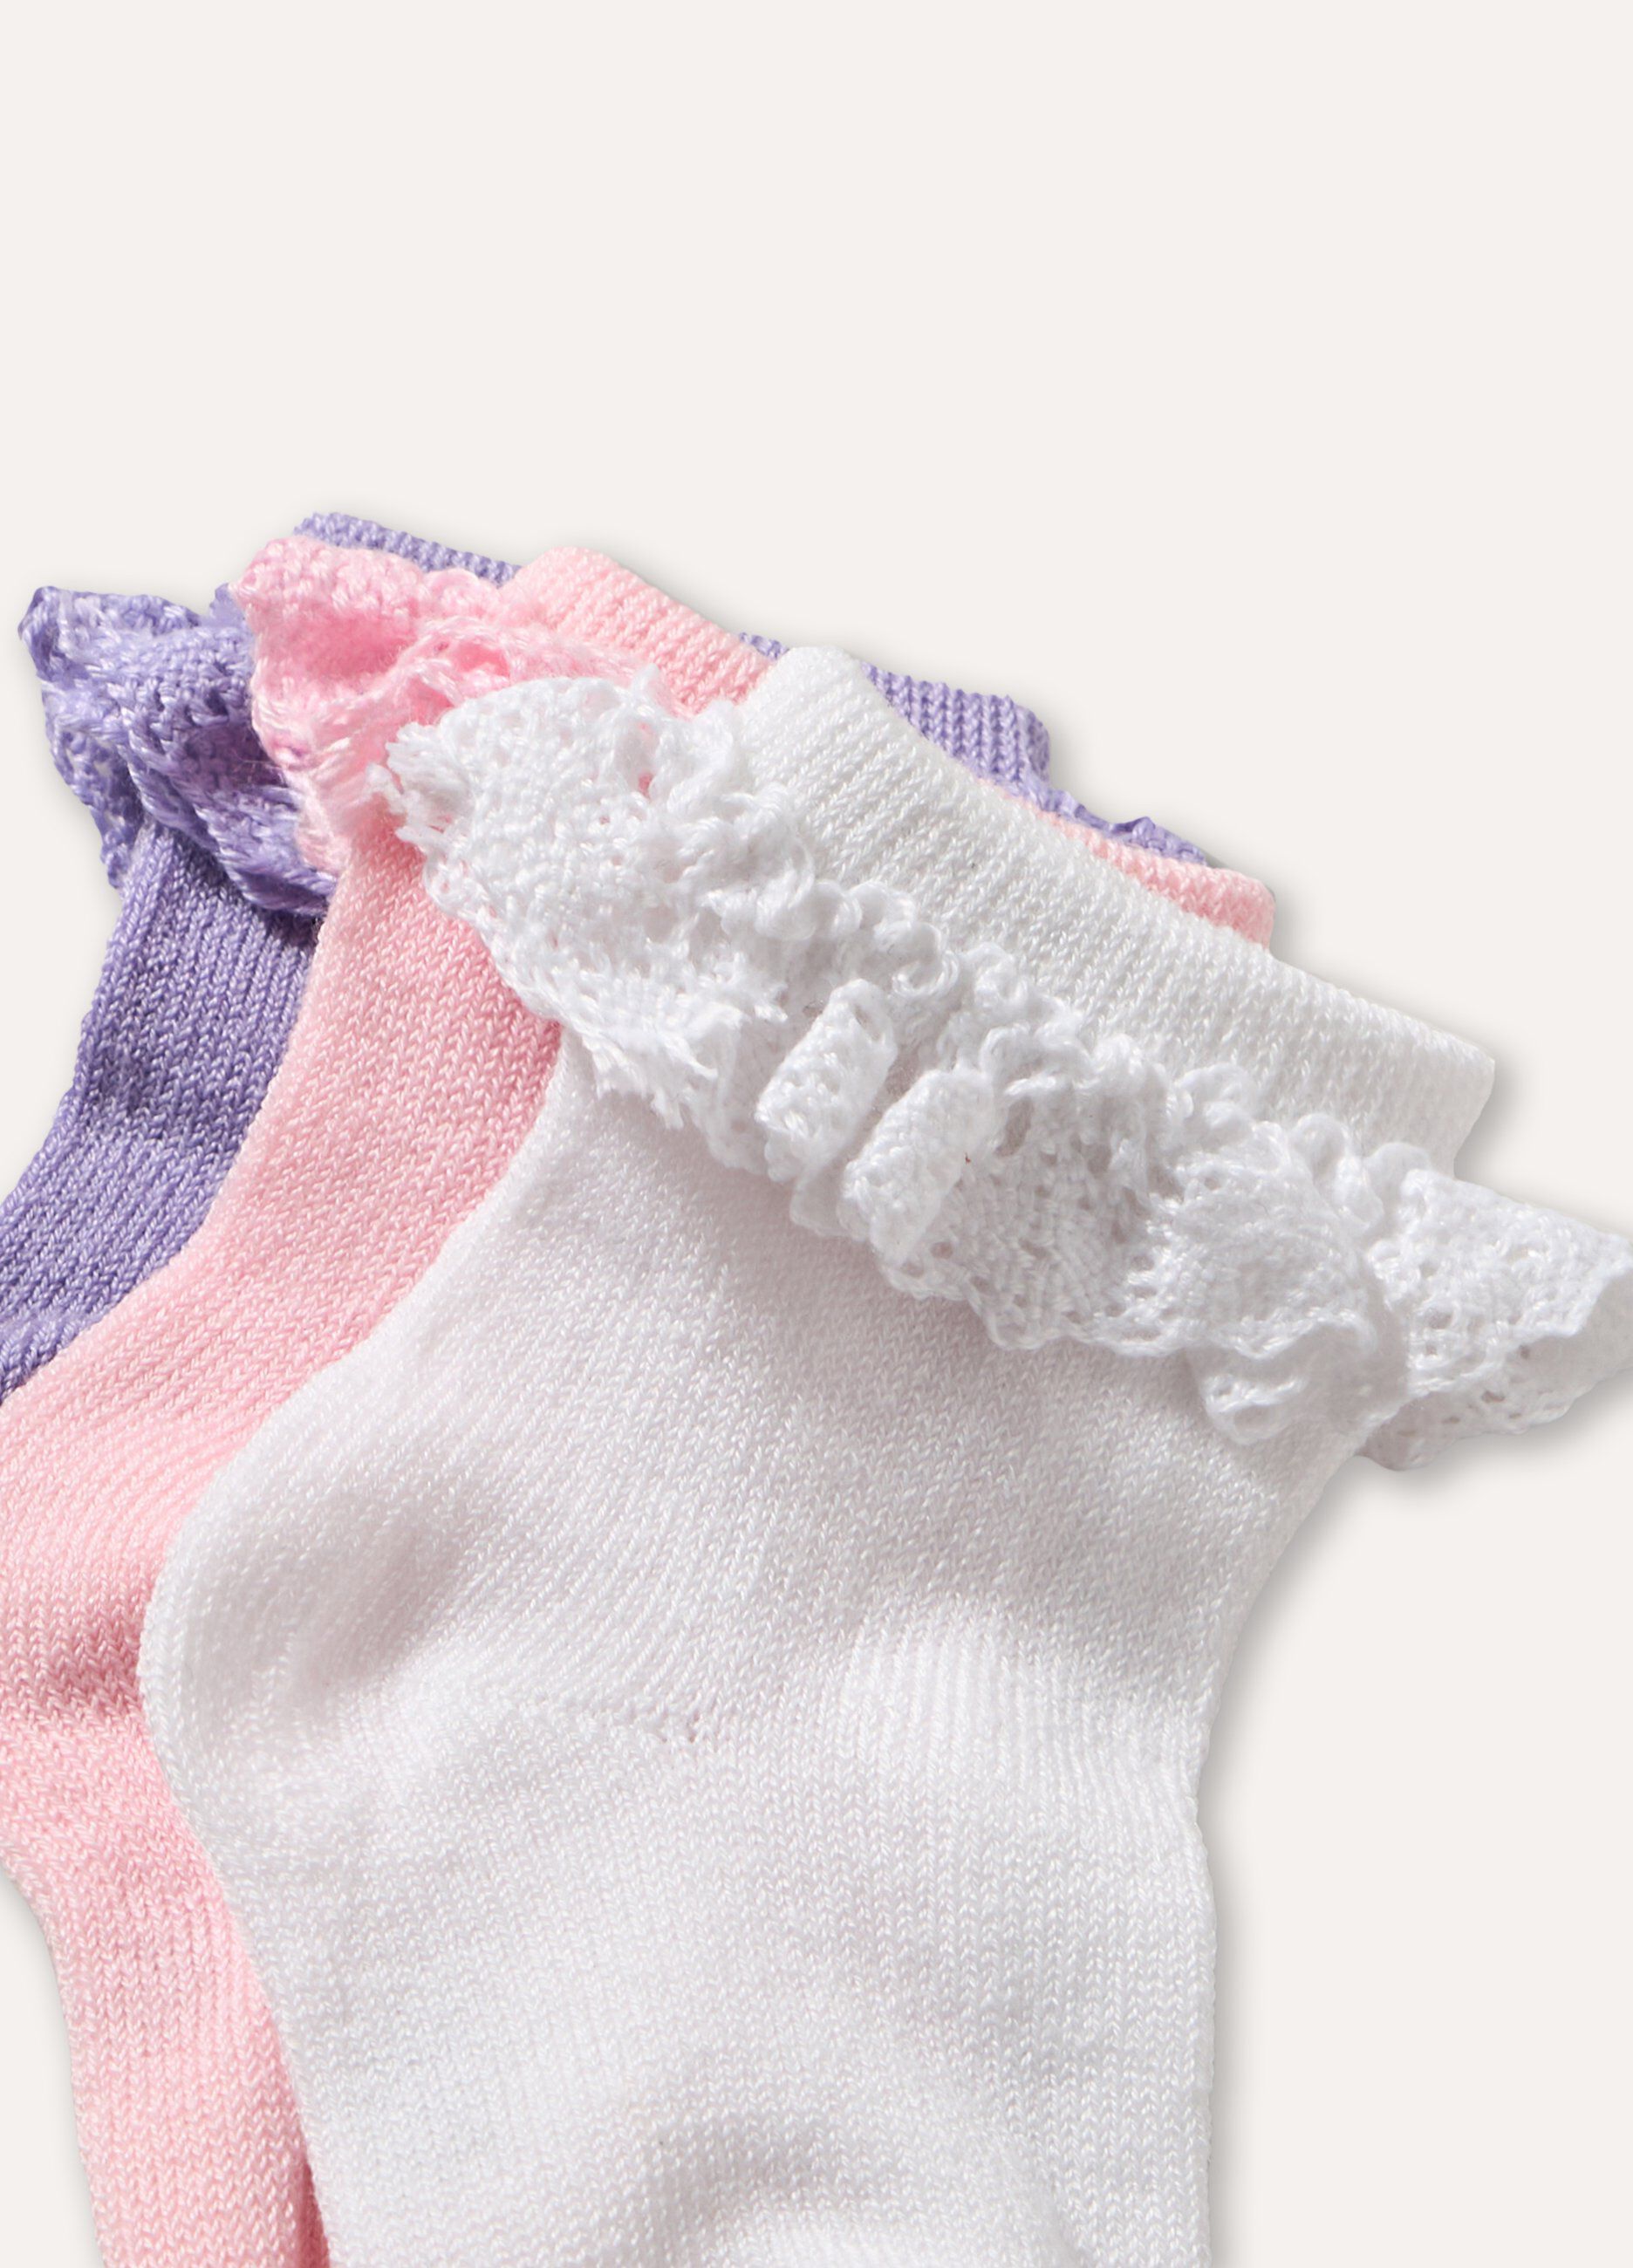 Pack 3 calze in cotone stretch con applicazione neonata